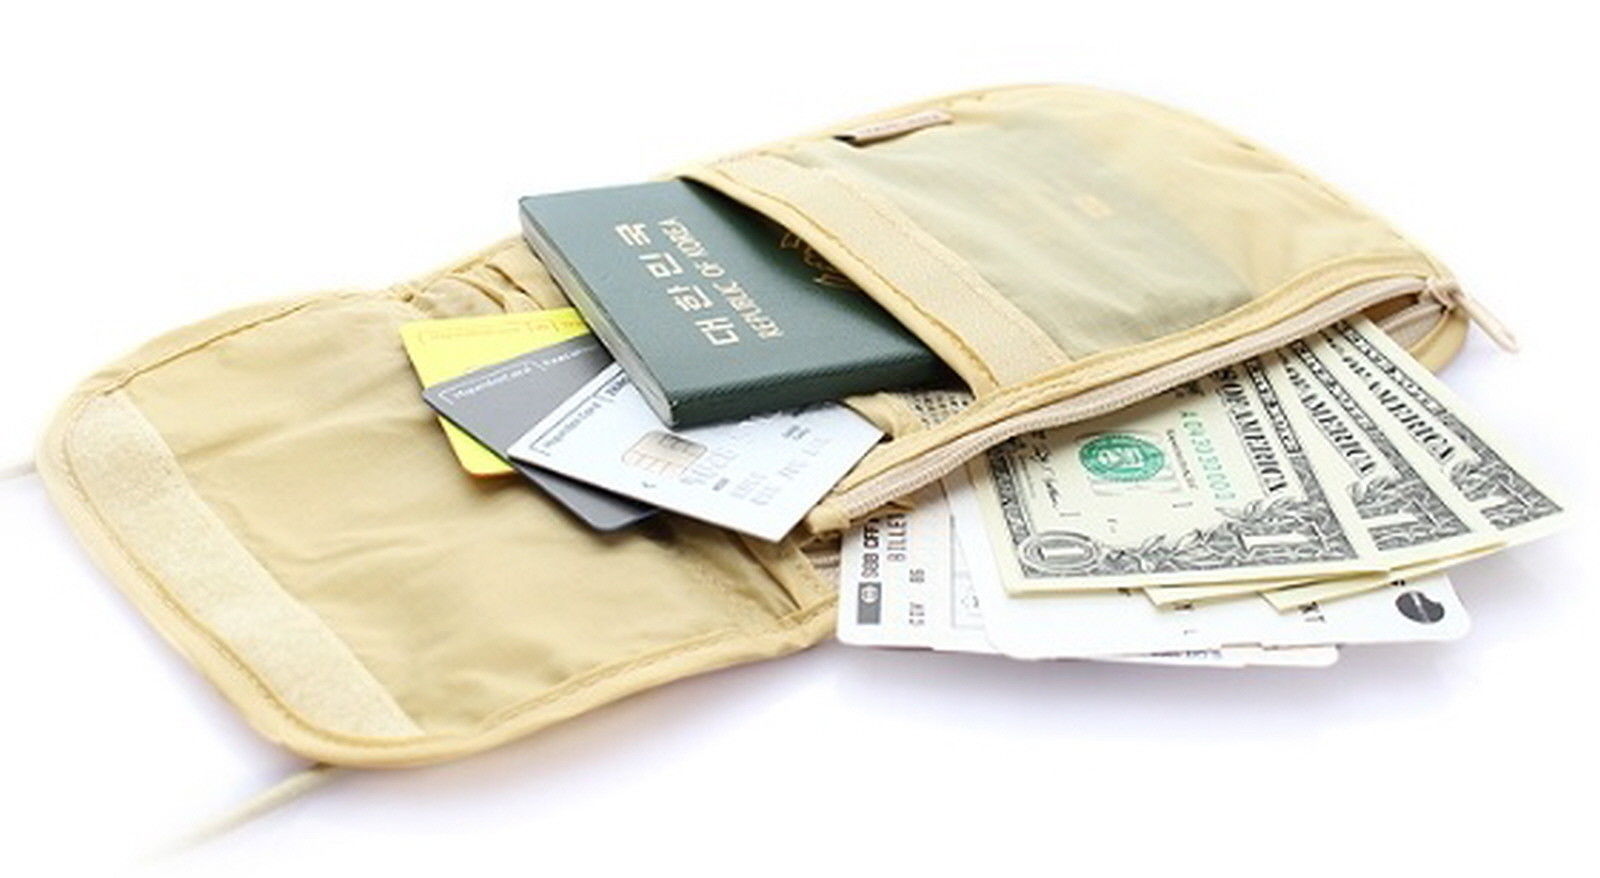 Travel wallet hidden pouch